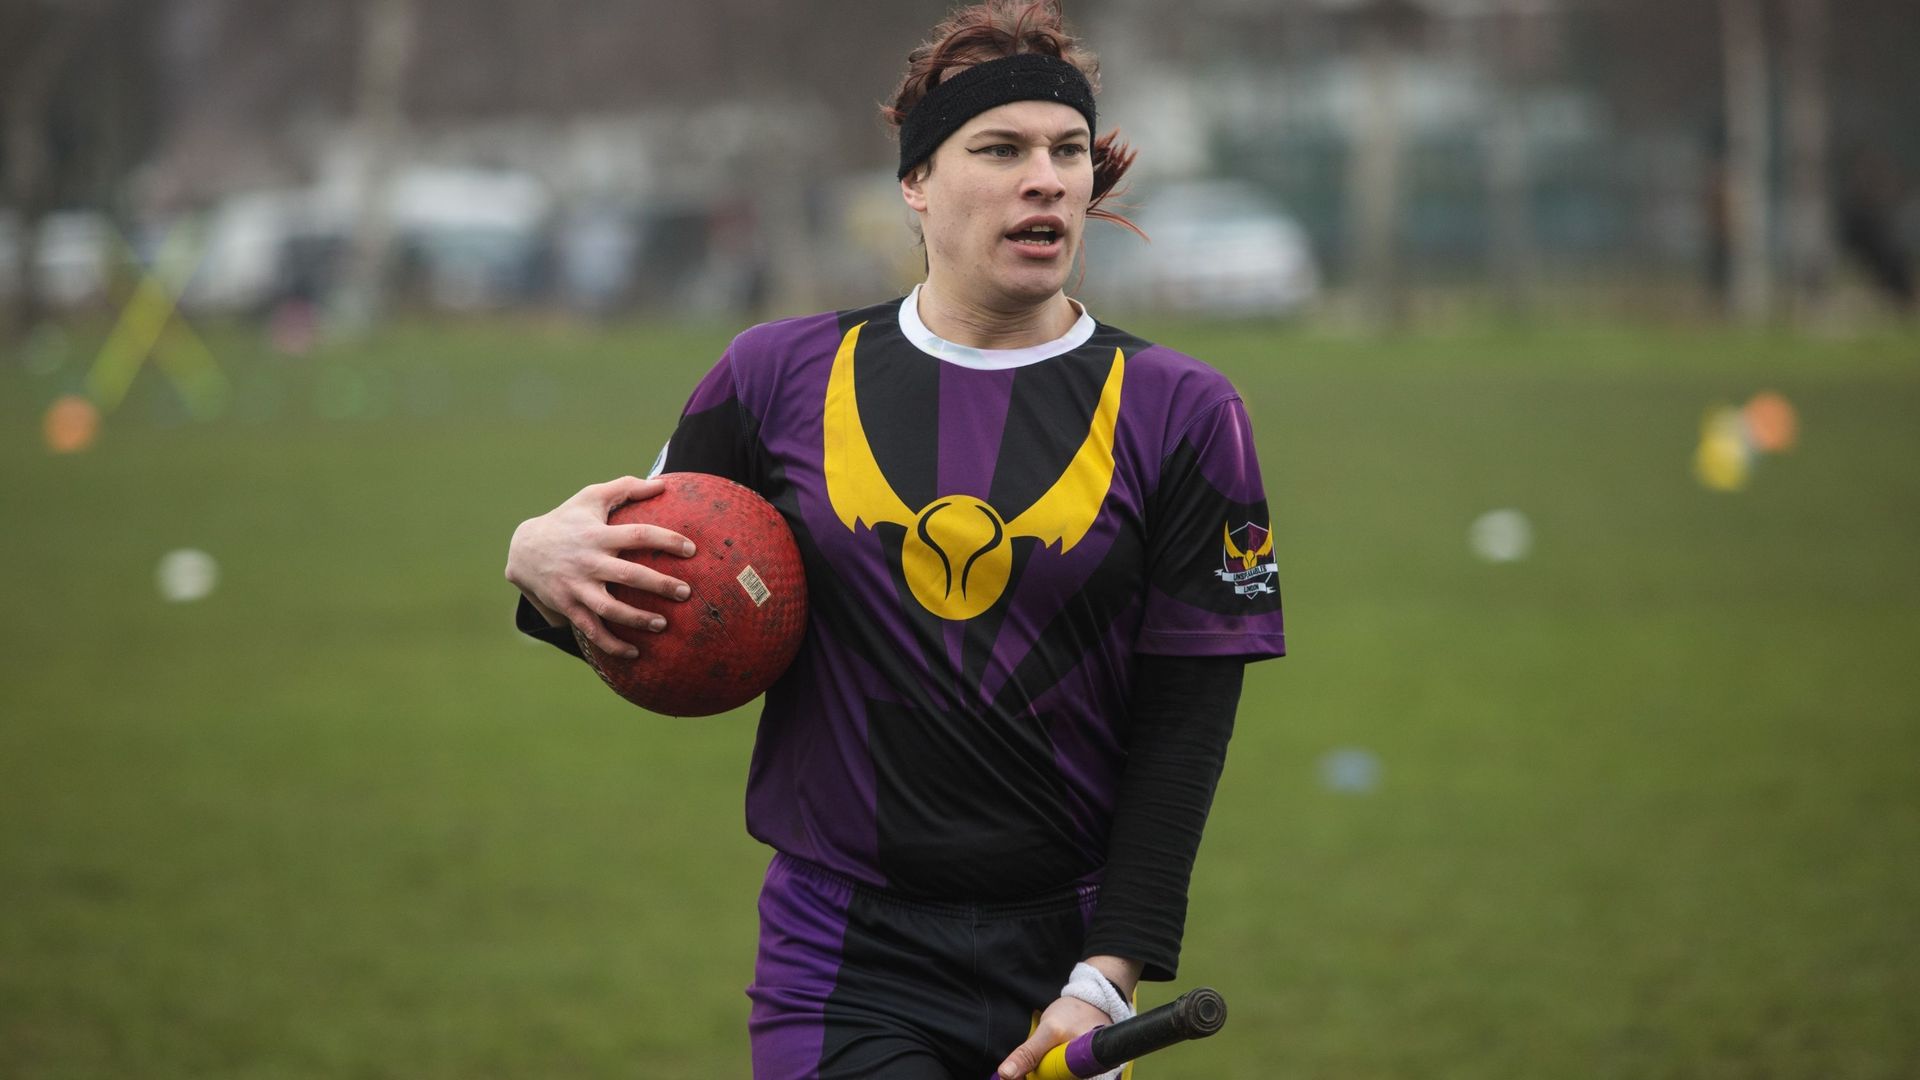 Un joueur de l’équipe de quidditch London Unspeakables joue lors du tournoi de quidditch Crumpet Cup sur Clapham Common, le 18 février 2017 à Londres, en Angleterre.